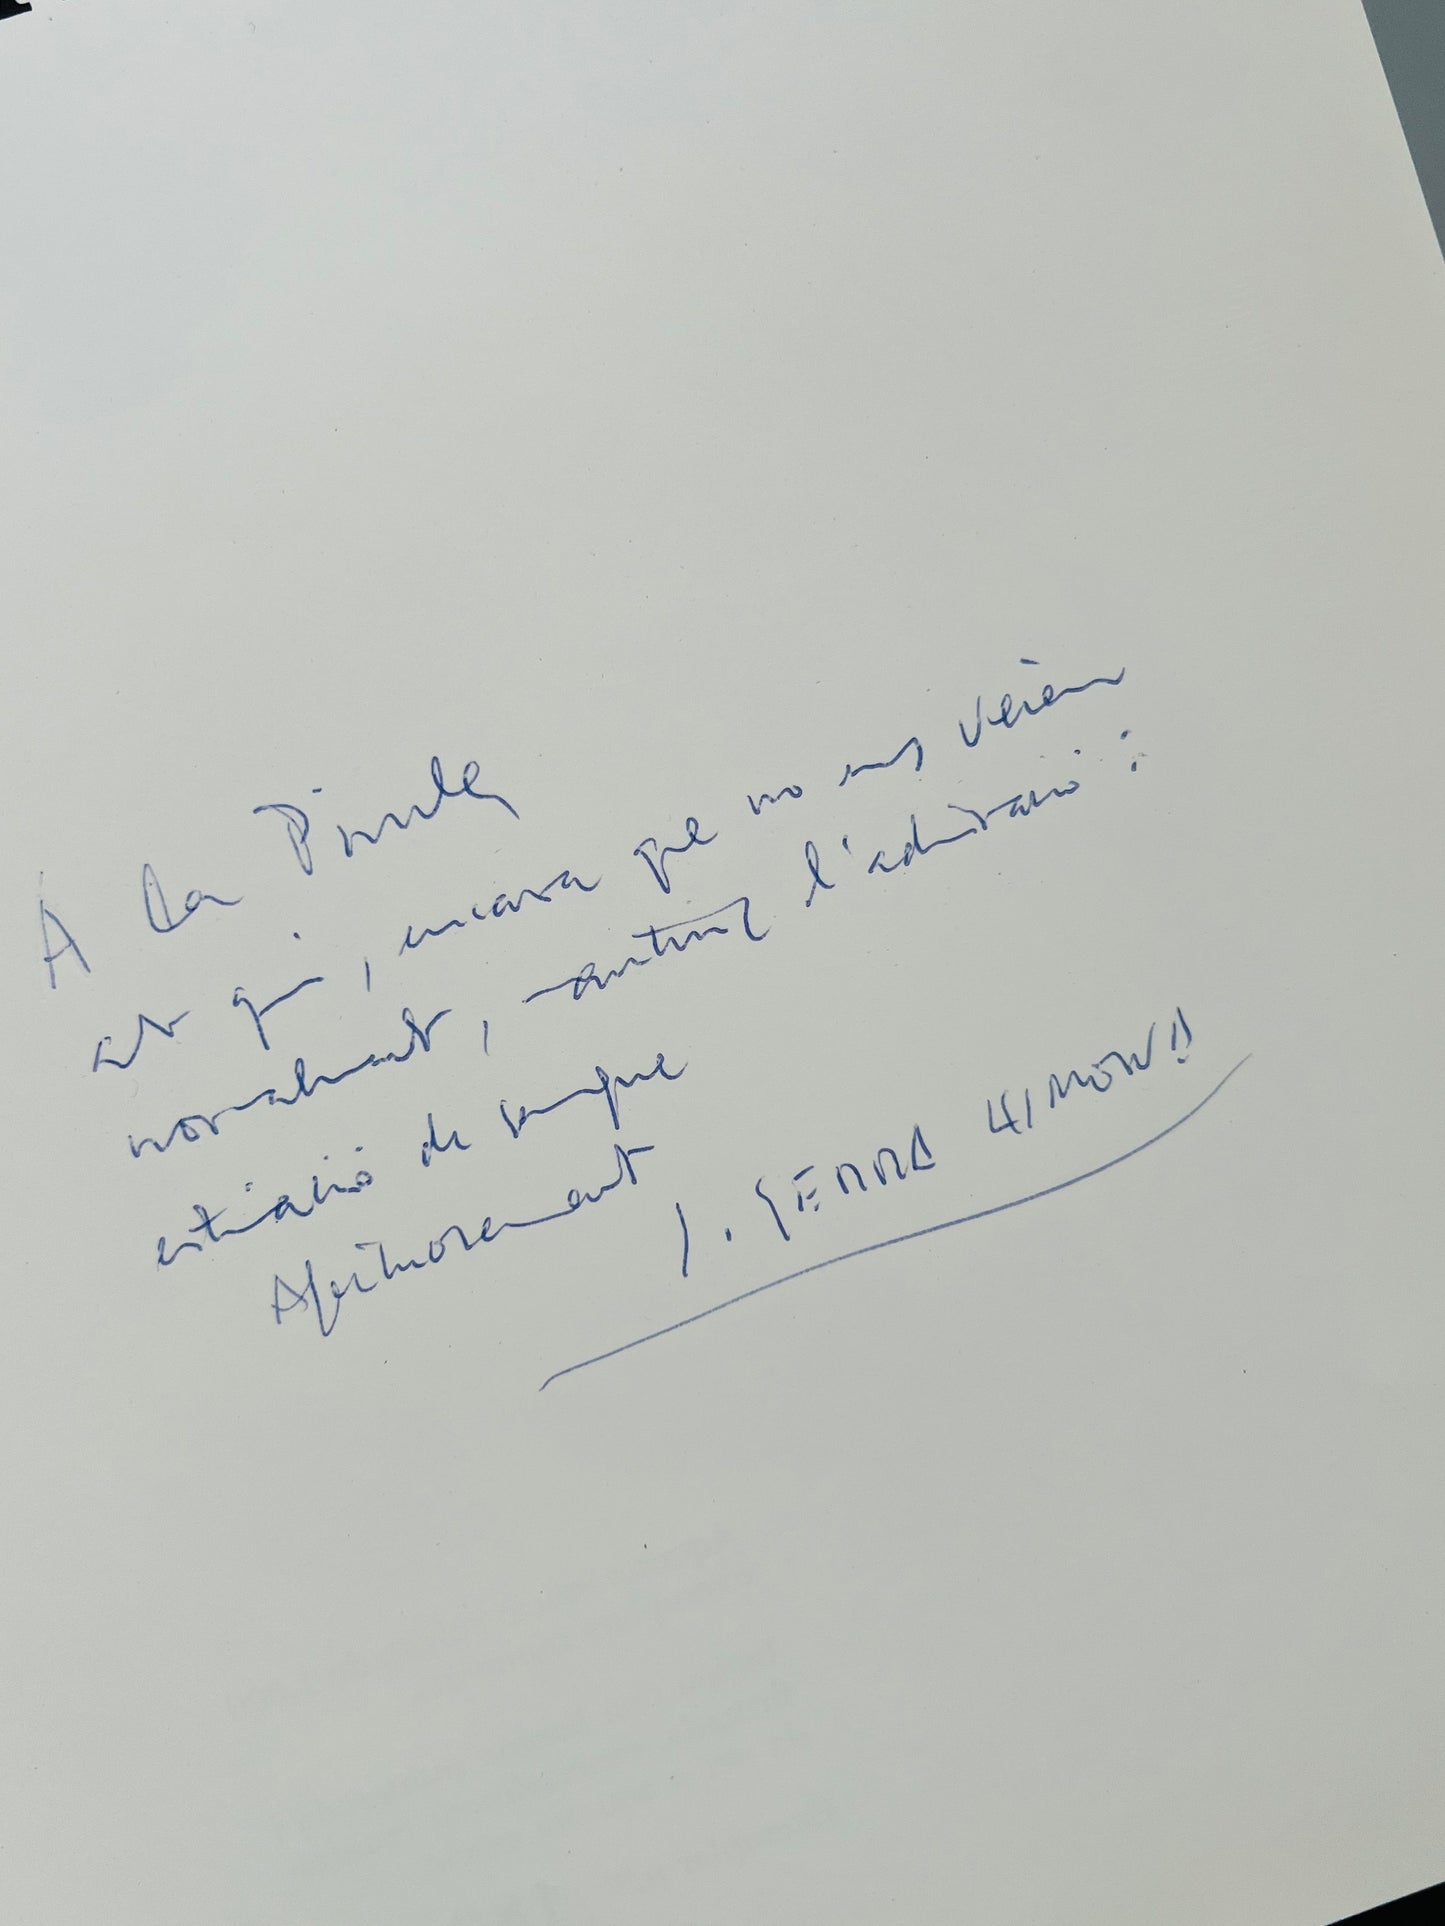 Libro de arte Josep Serra i Llimona (firmado y dedicado) + lámina firmada y numerada - Ediciones Mayo, 1991